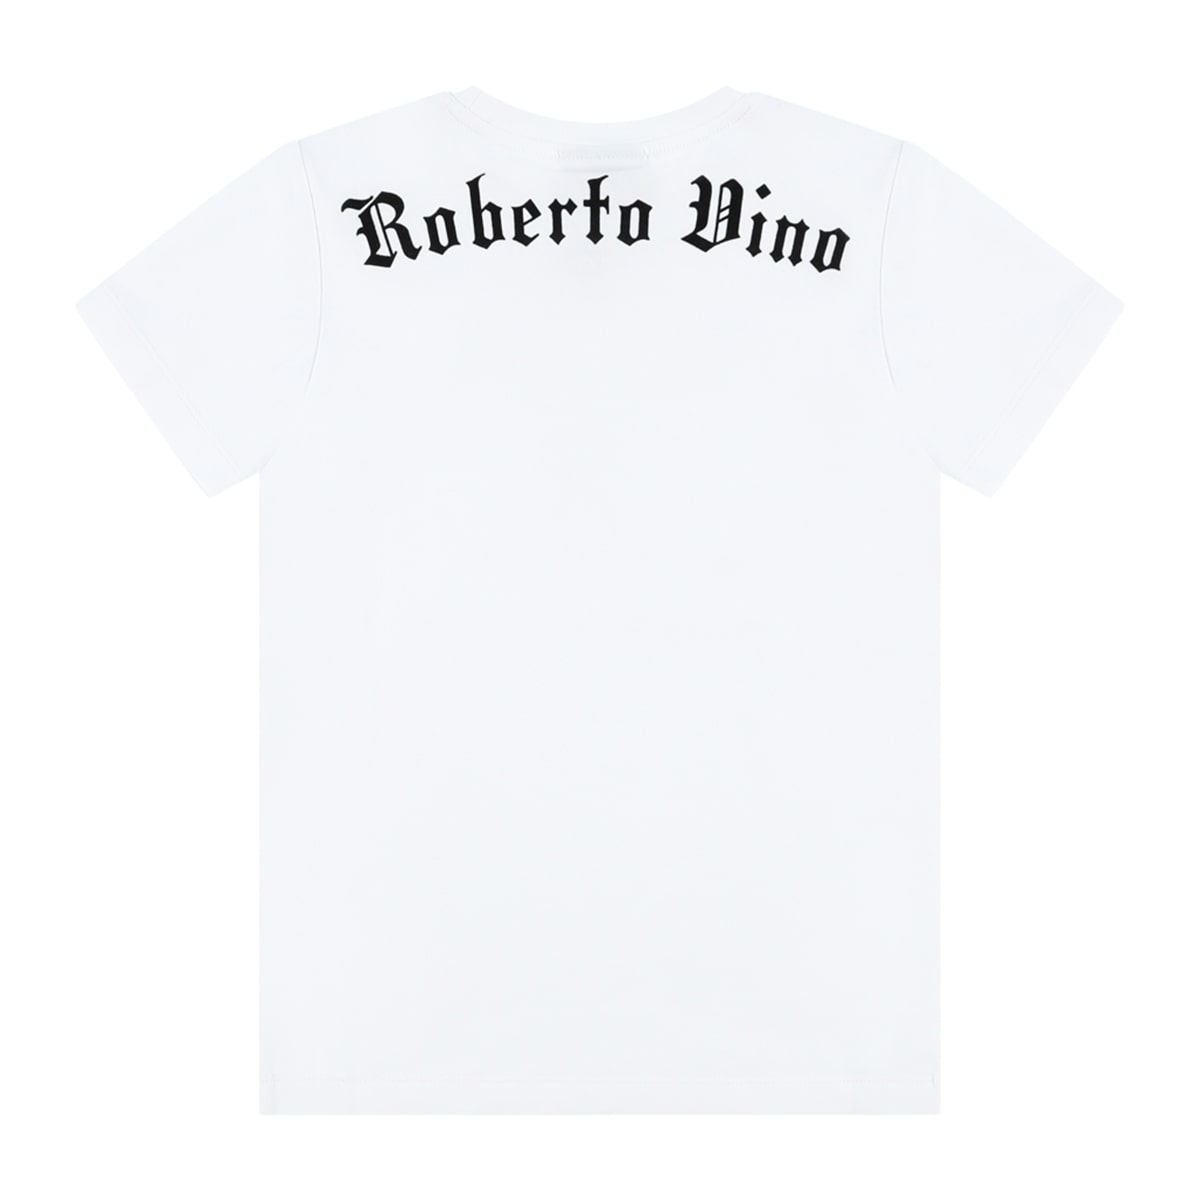 חולצת טי שרט ROBERTO VINO דגל מונף לילדים